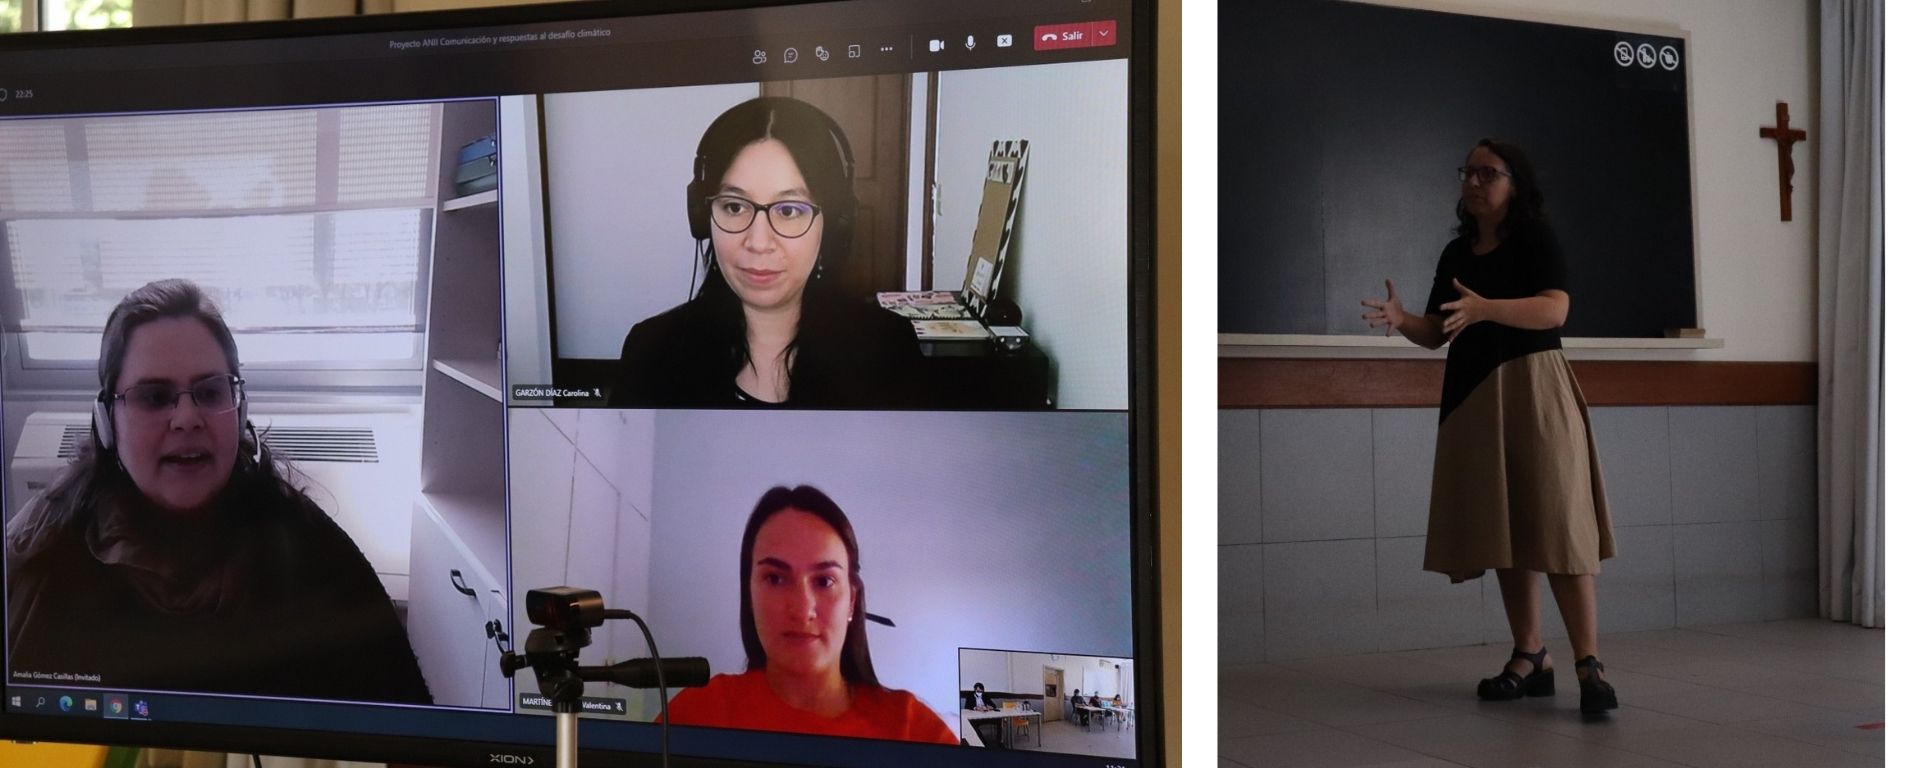 Victoria Gomez y los investigadores en pantalla virtual